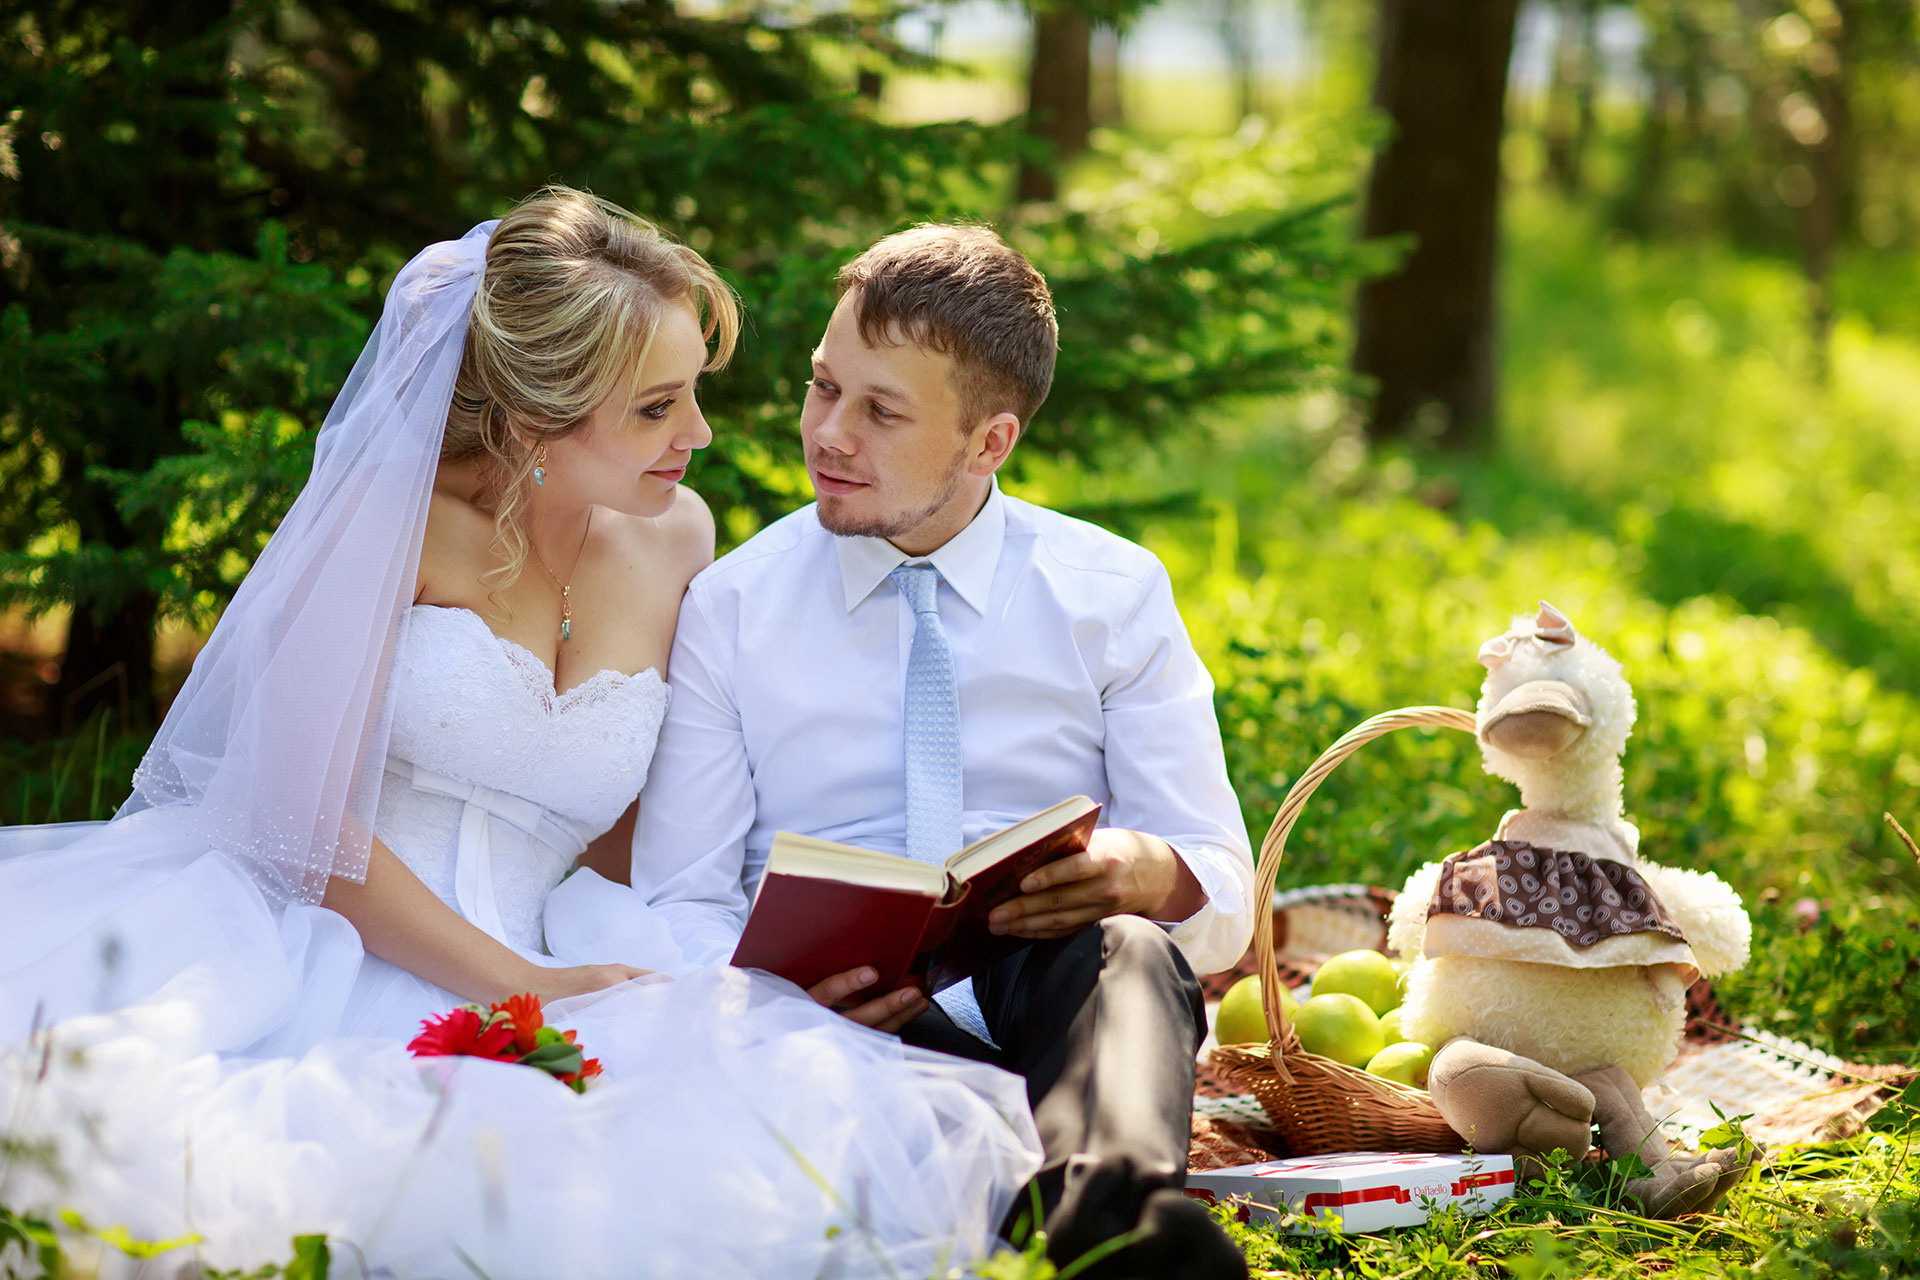 Свадьба в мае: приметы и особенности празднования свадьбы